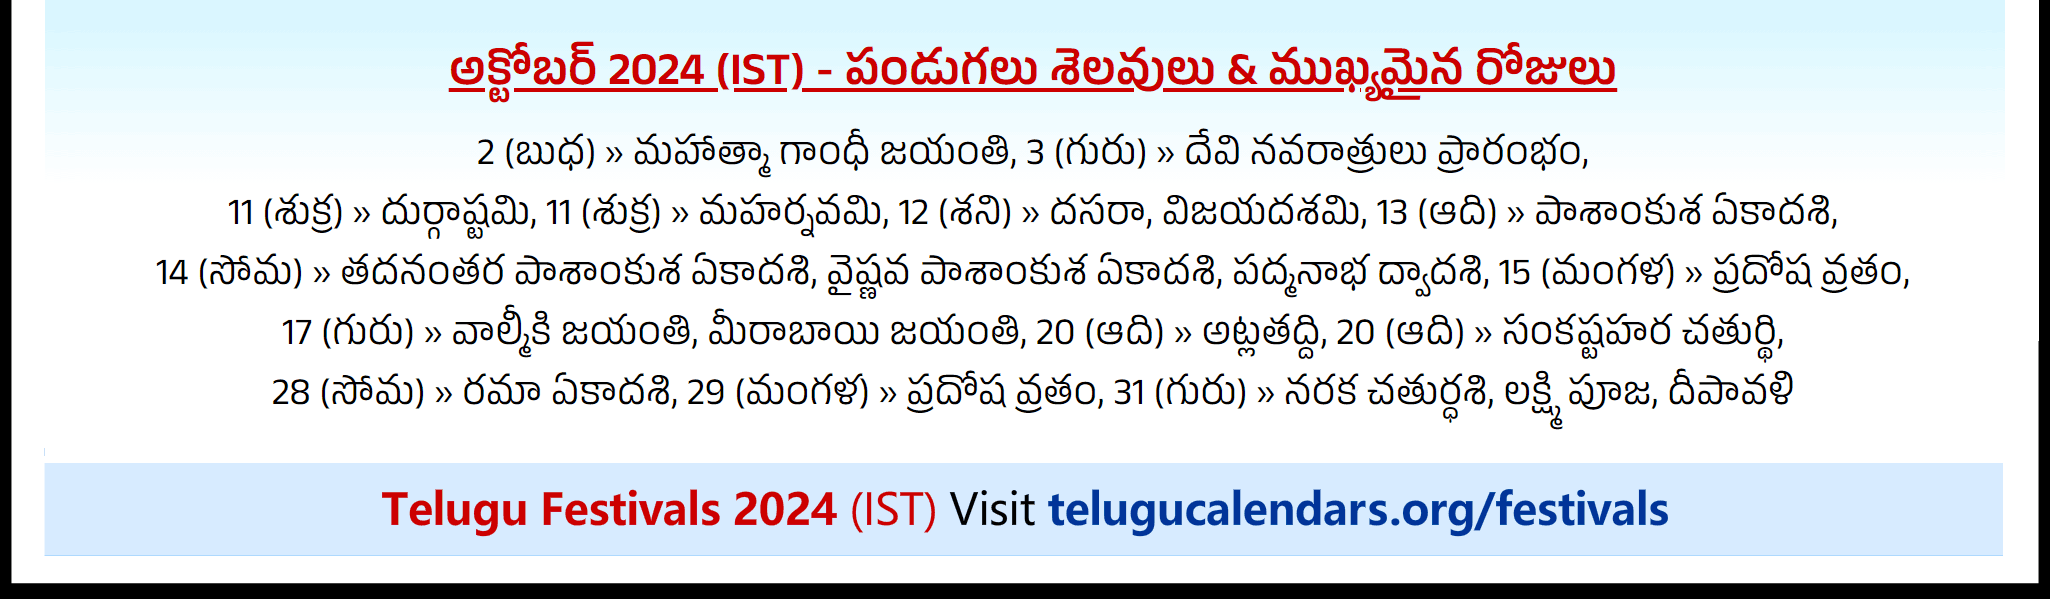 Telugu Festivals 2024 October Chicago